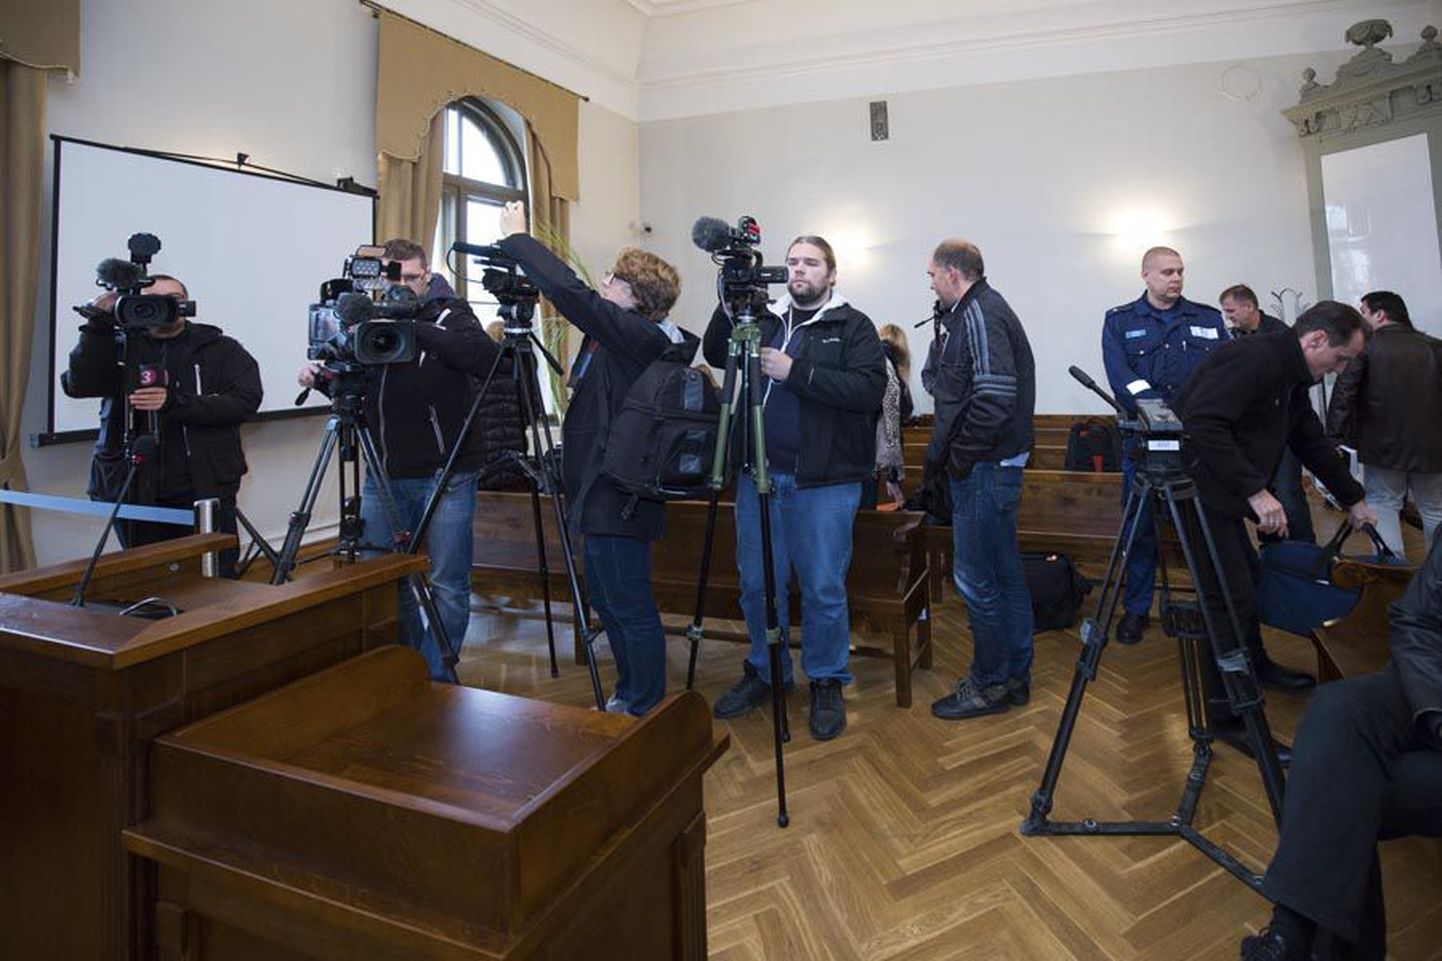 Sellist vaatepilti pole Viljandi kohtumajas veel nähtud. Saali oli üles seatud üheksa filmivat kaamerat, tehti fotosid ja otsepilt kohtusaalist jõudis digilehtede vahendusel veebi.